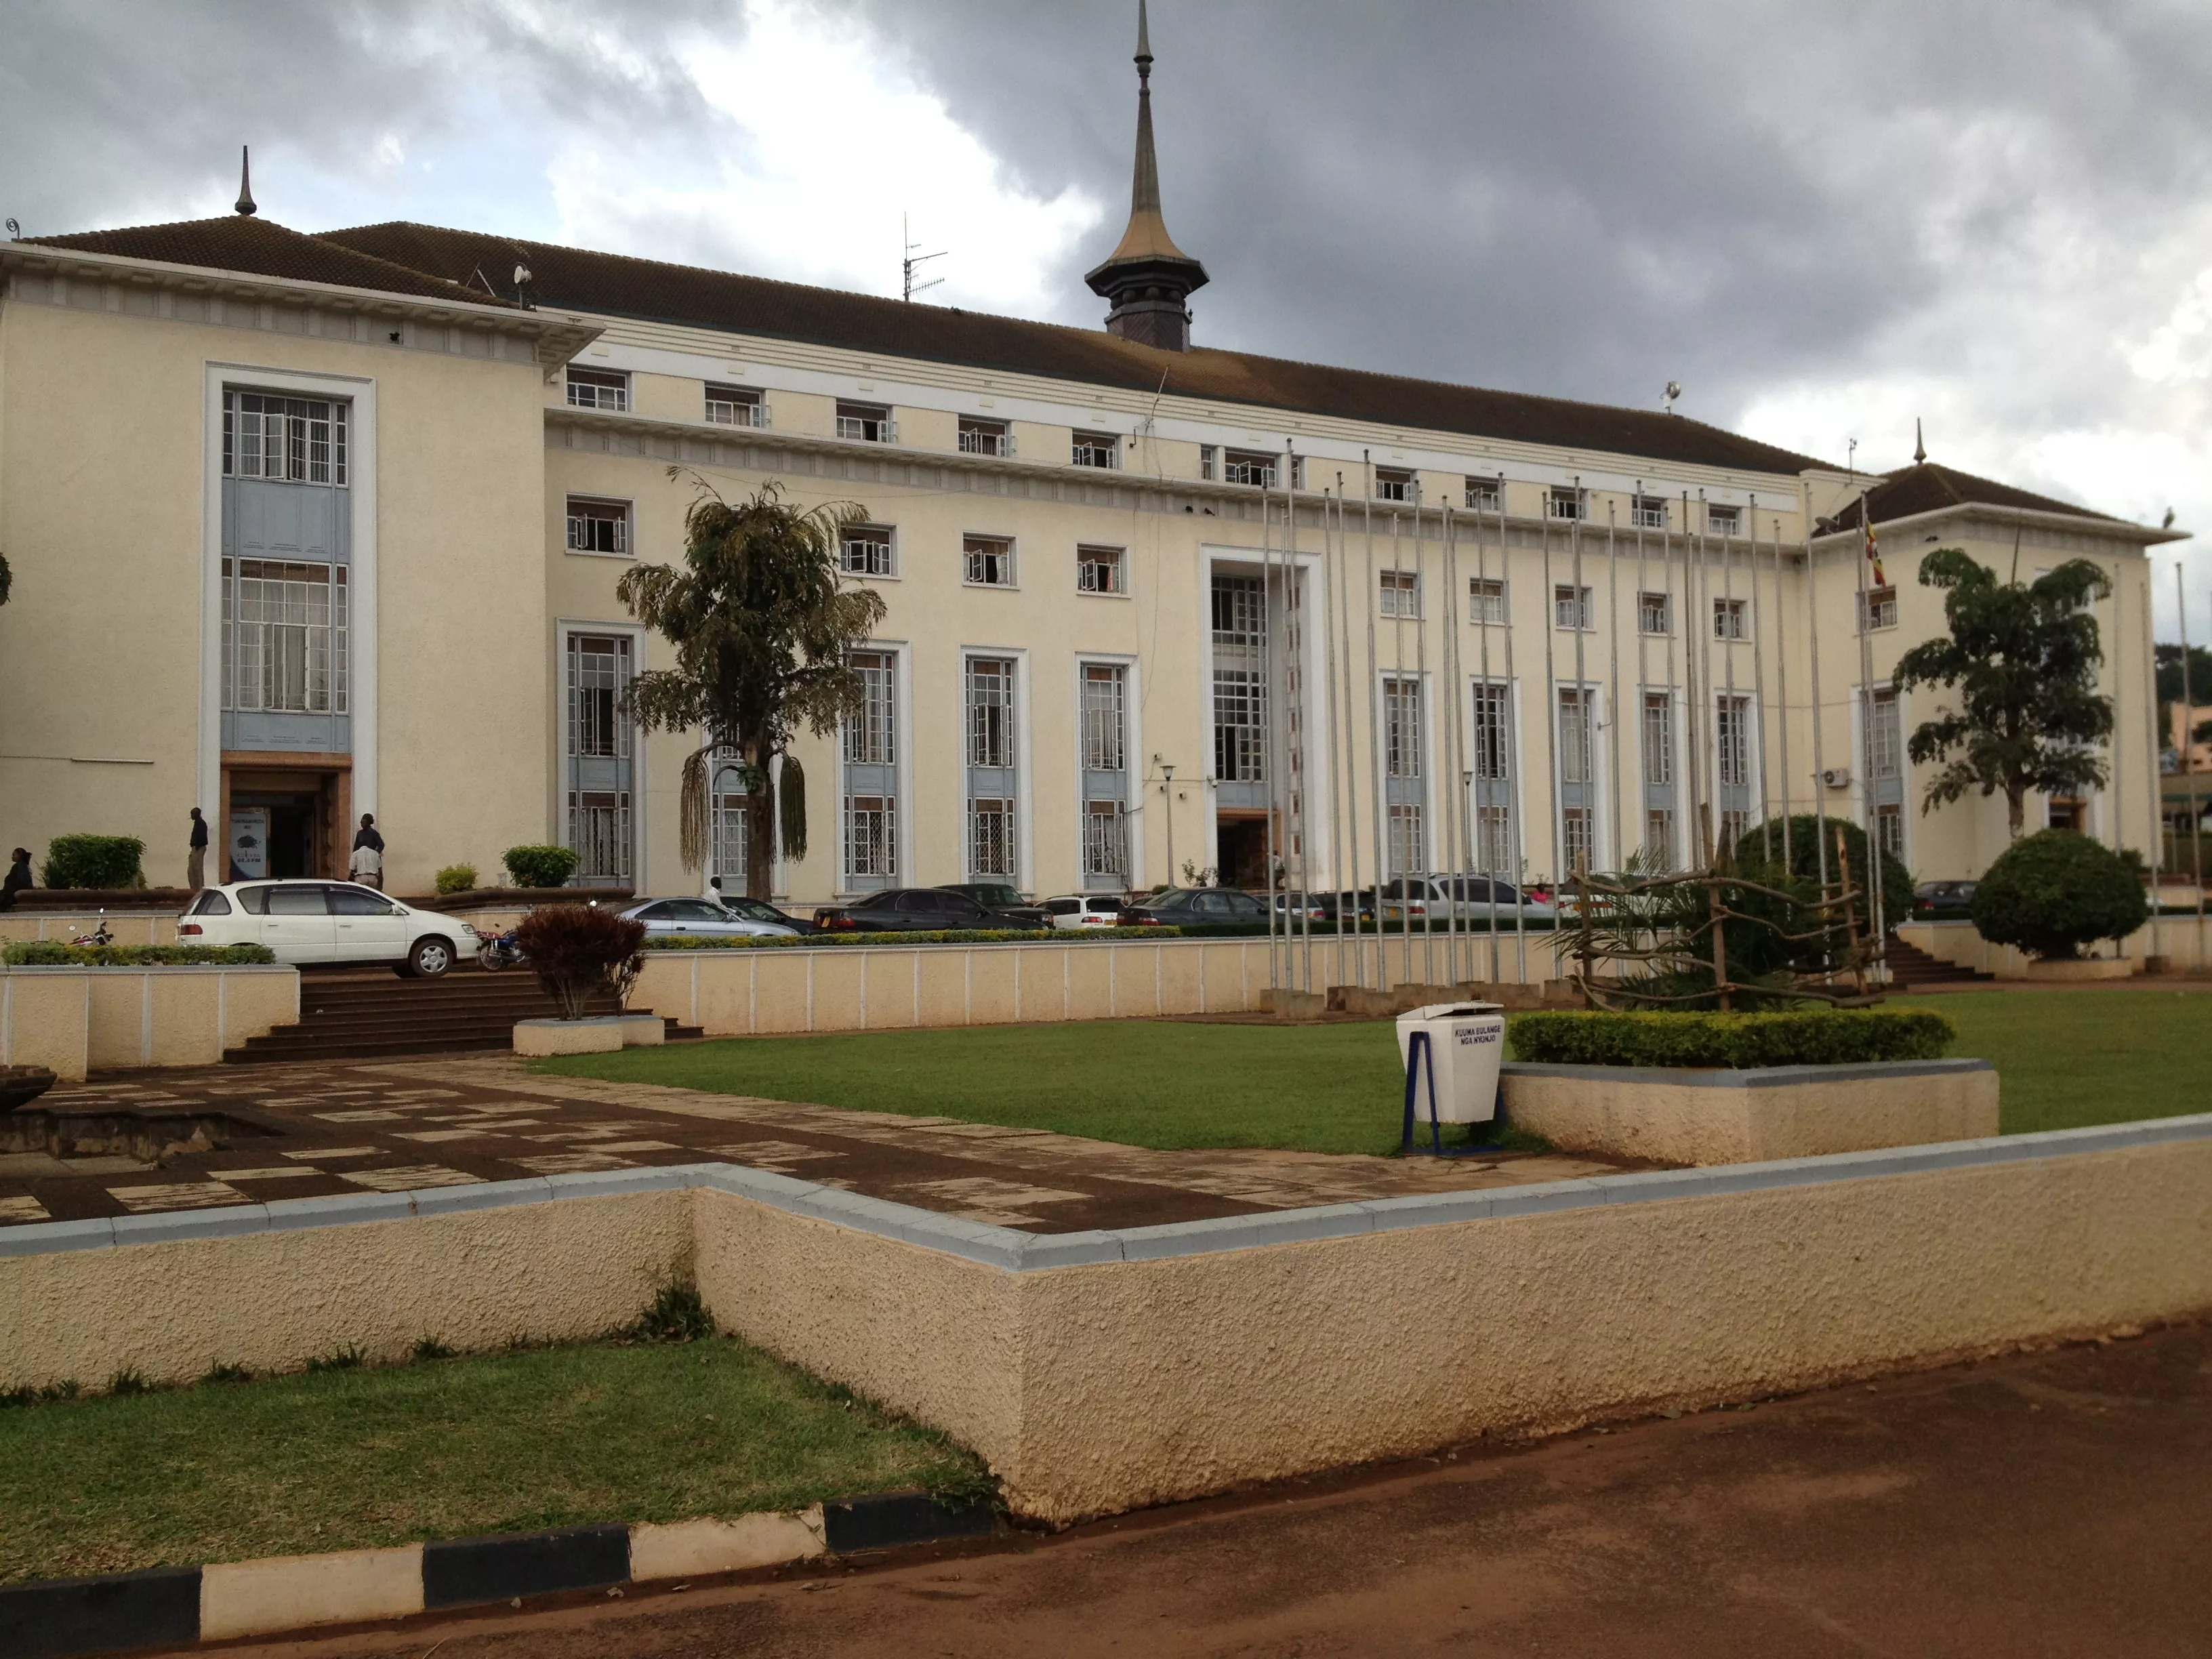 Kabaka's Palace in Uganda, Africa | Architecture - Rated 3.5